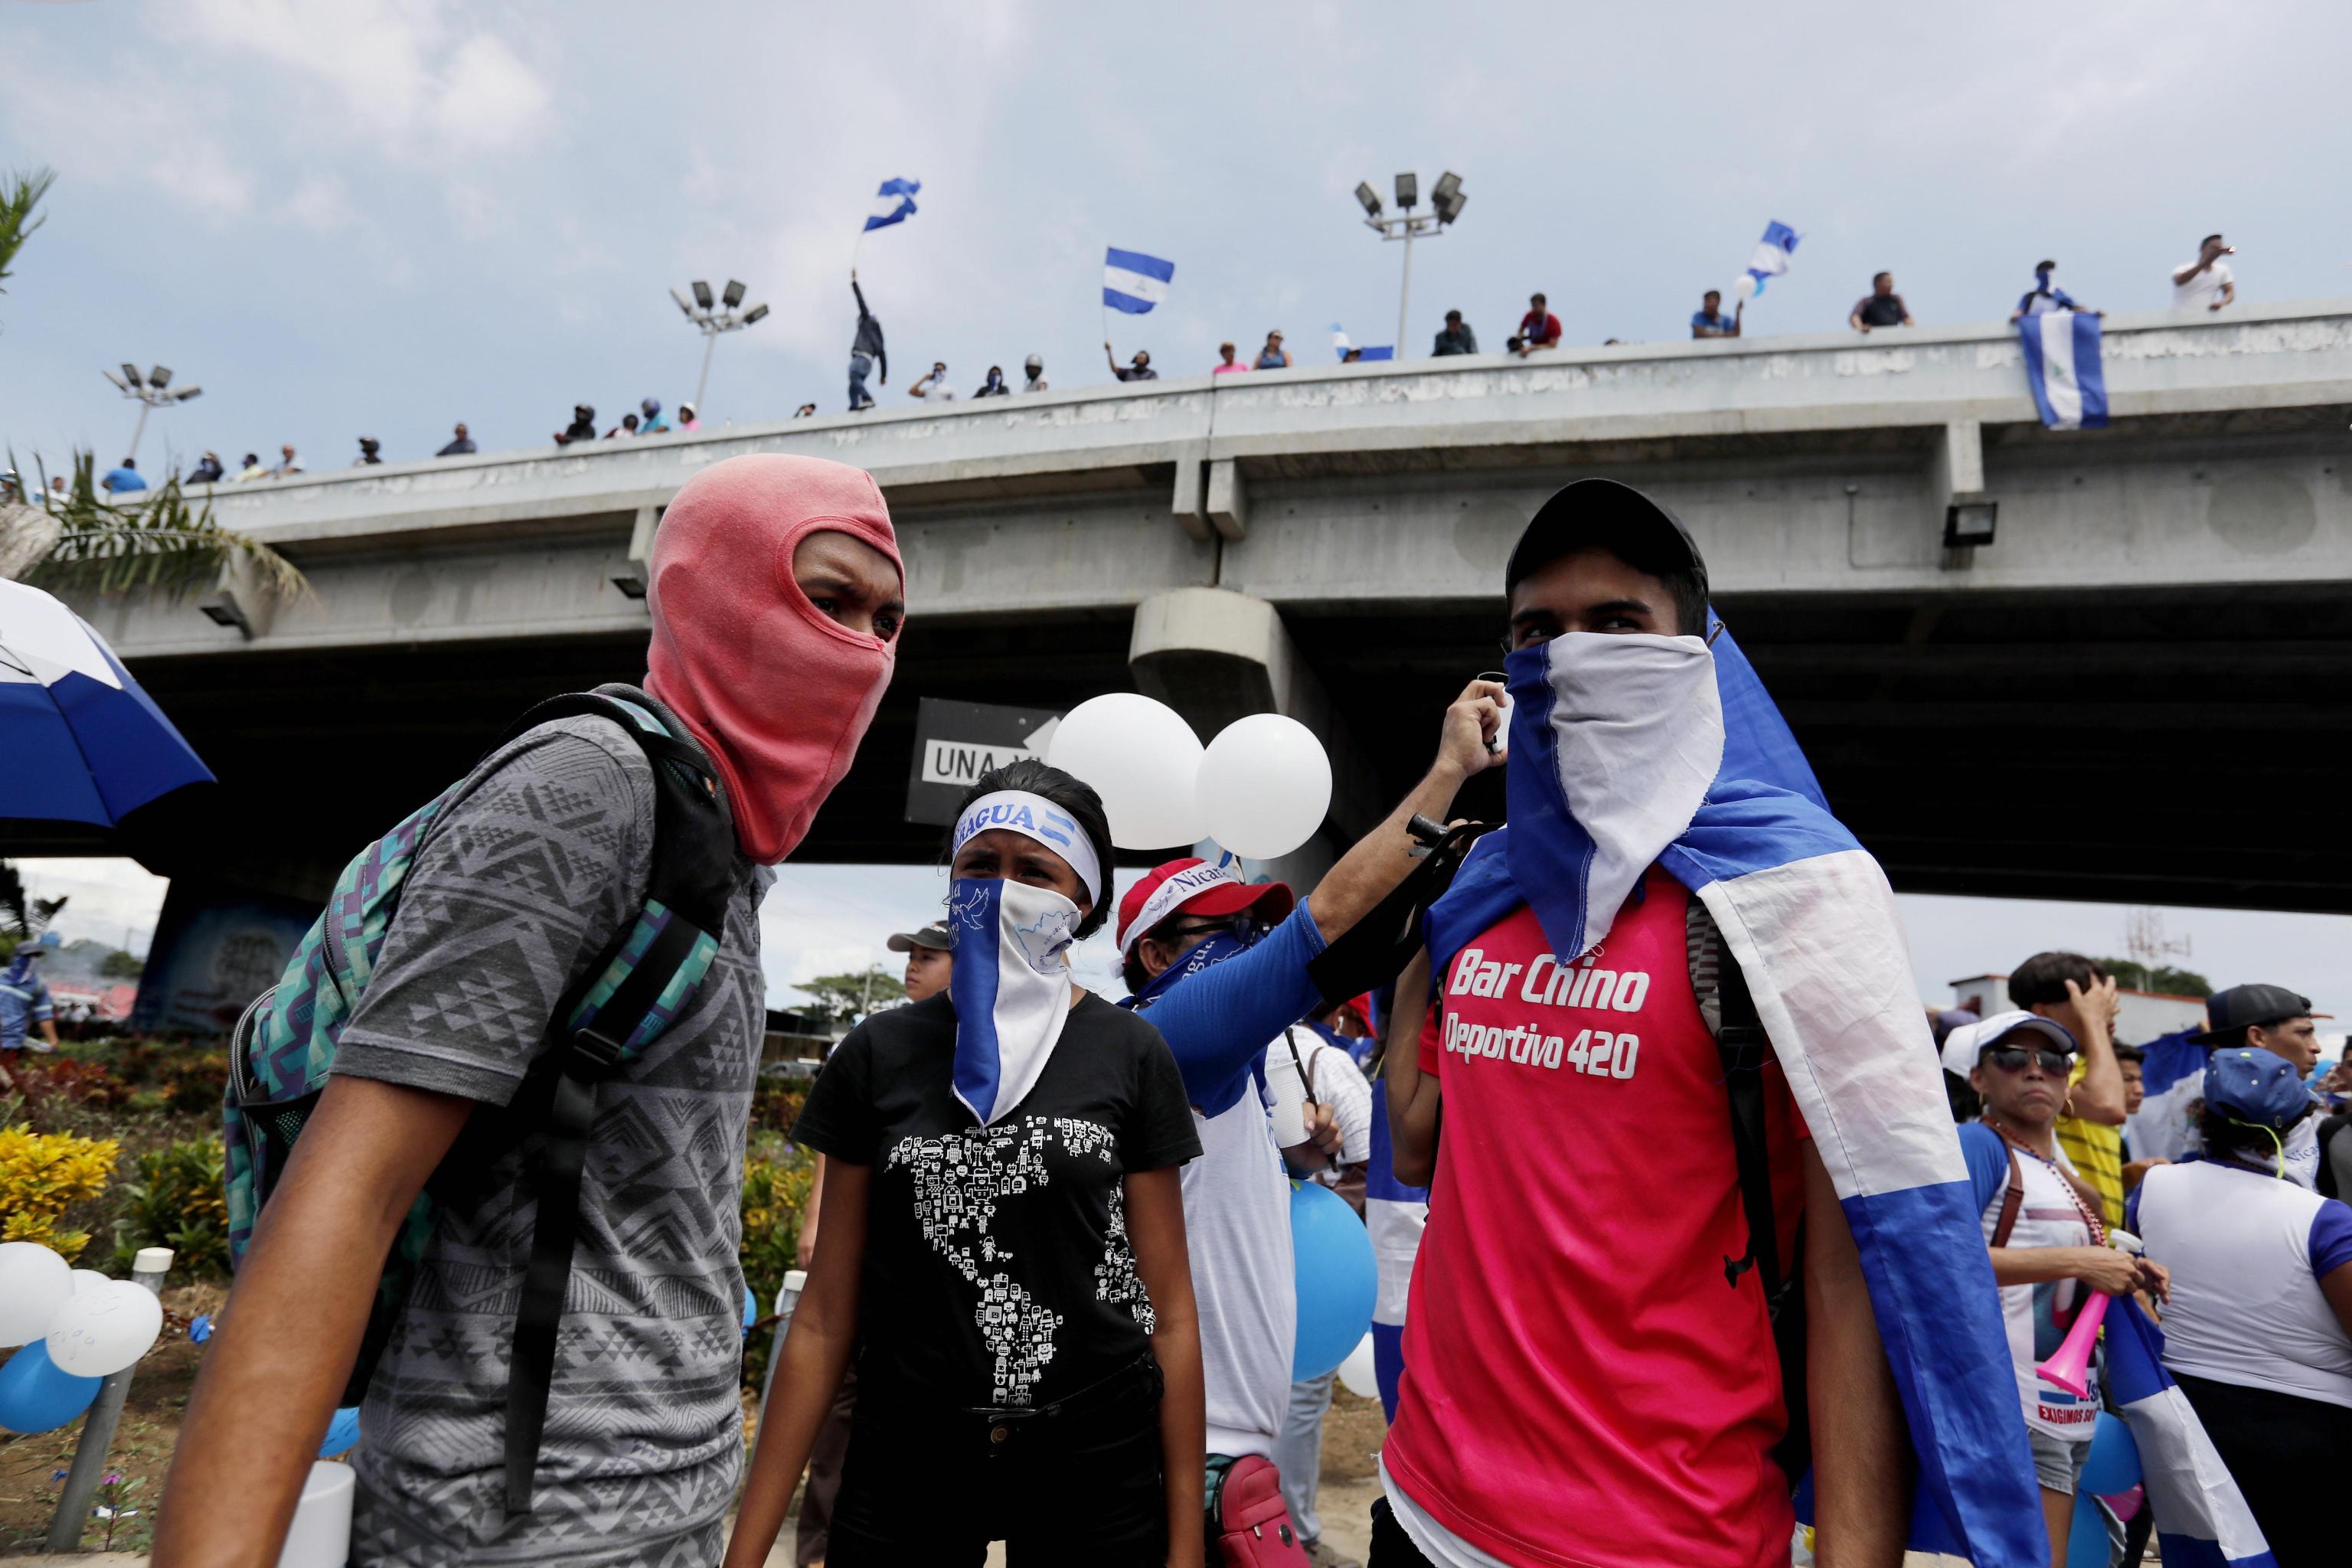 Altri giovani manifestanti con il volto coperto. Nei mesi scorsi sono state numerose le ritorsioni delle forze dell'ordine contro chi ha preso parte alle proteste